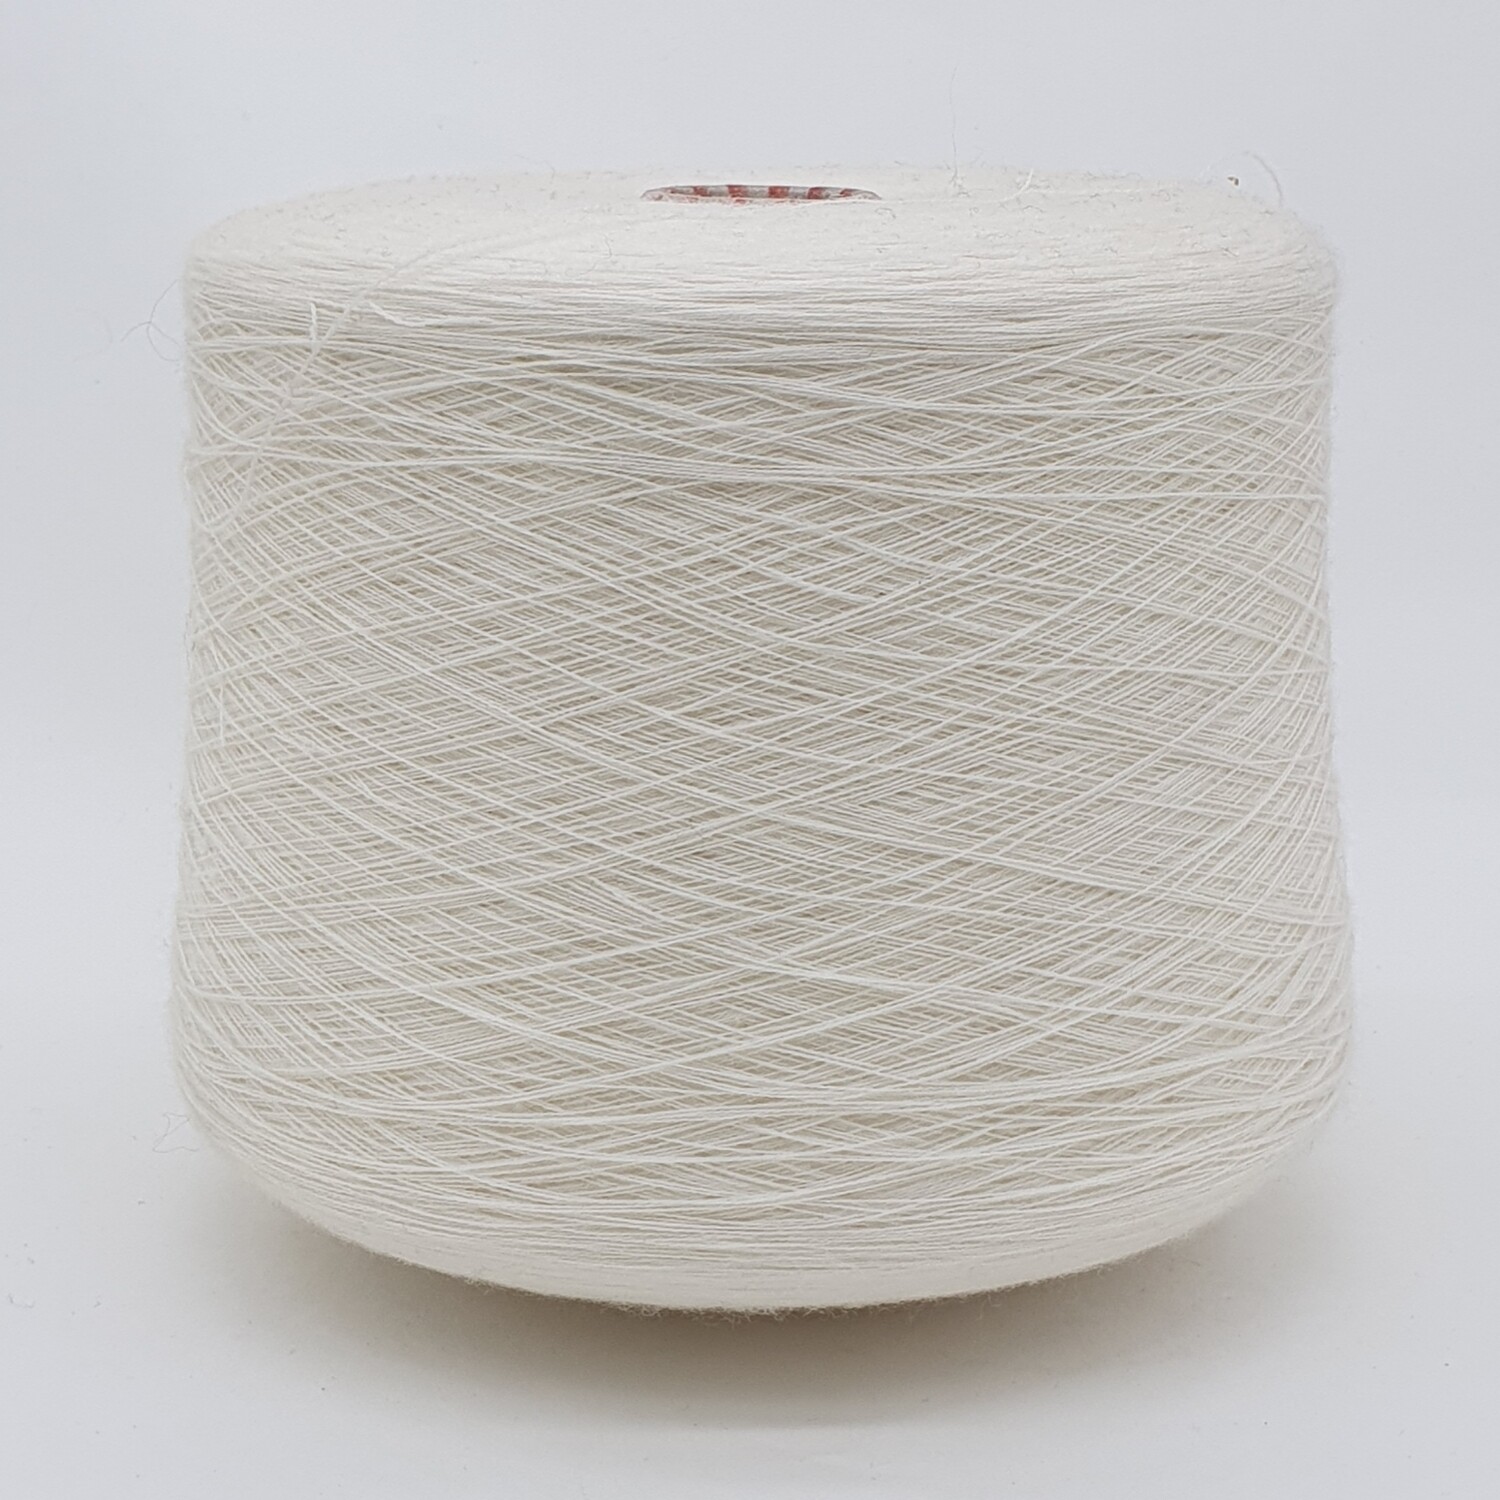 ПряжаLane Rossi Amico Soft (100% мериносовая шерсть гребенная), 2/48 (2400м/100гр), молочный